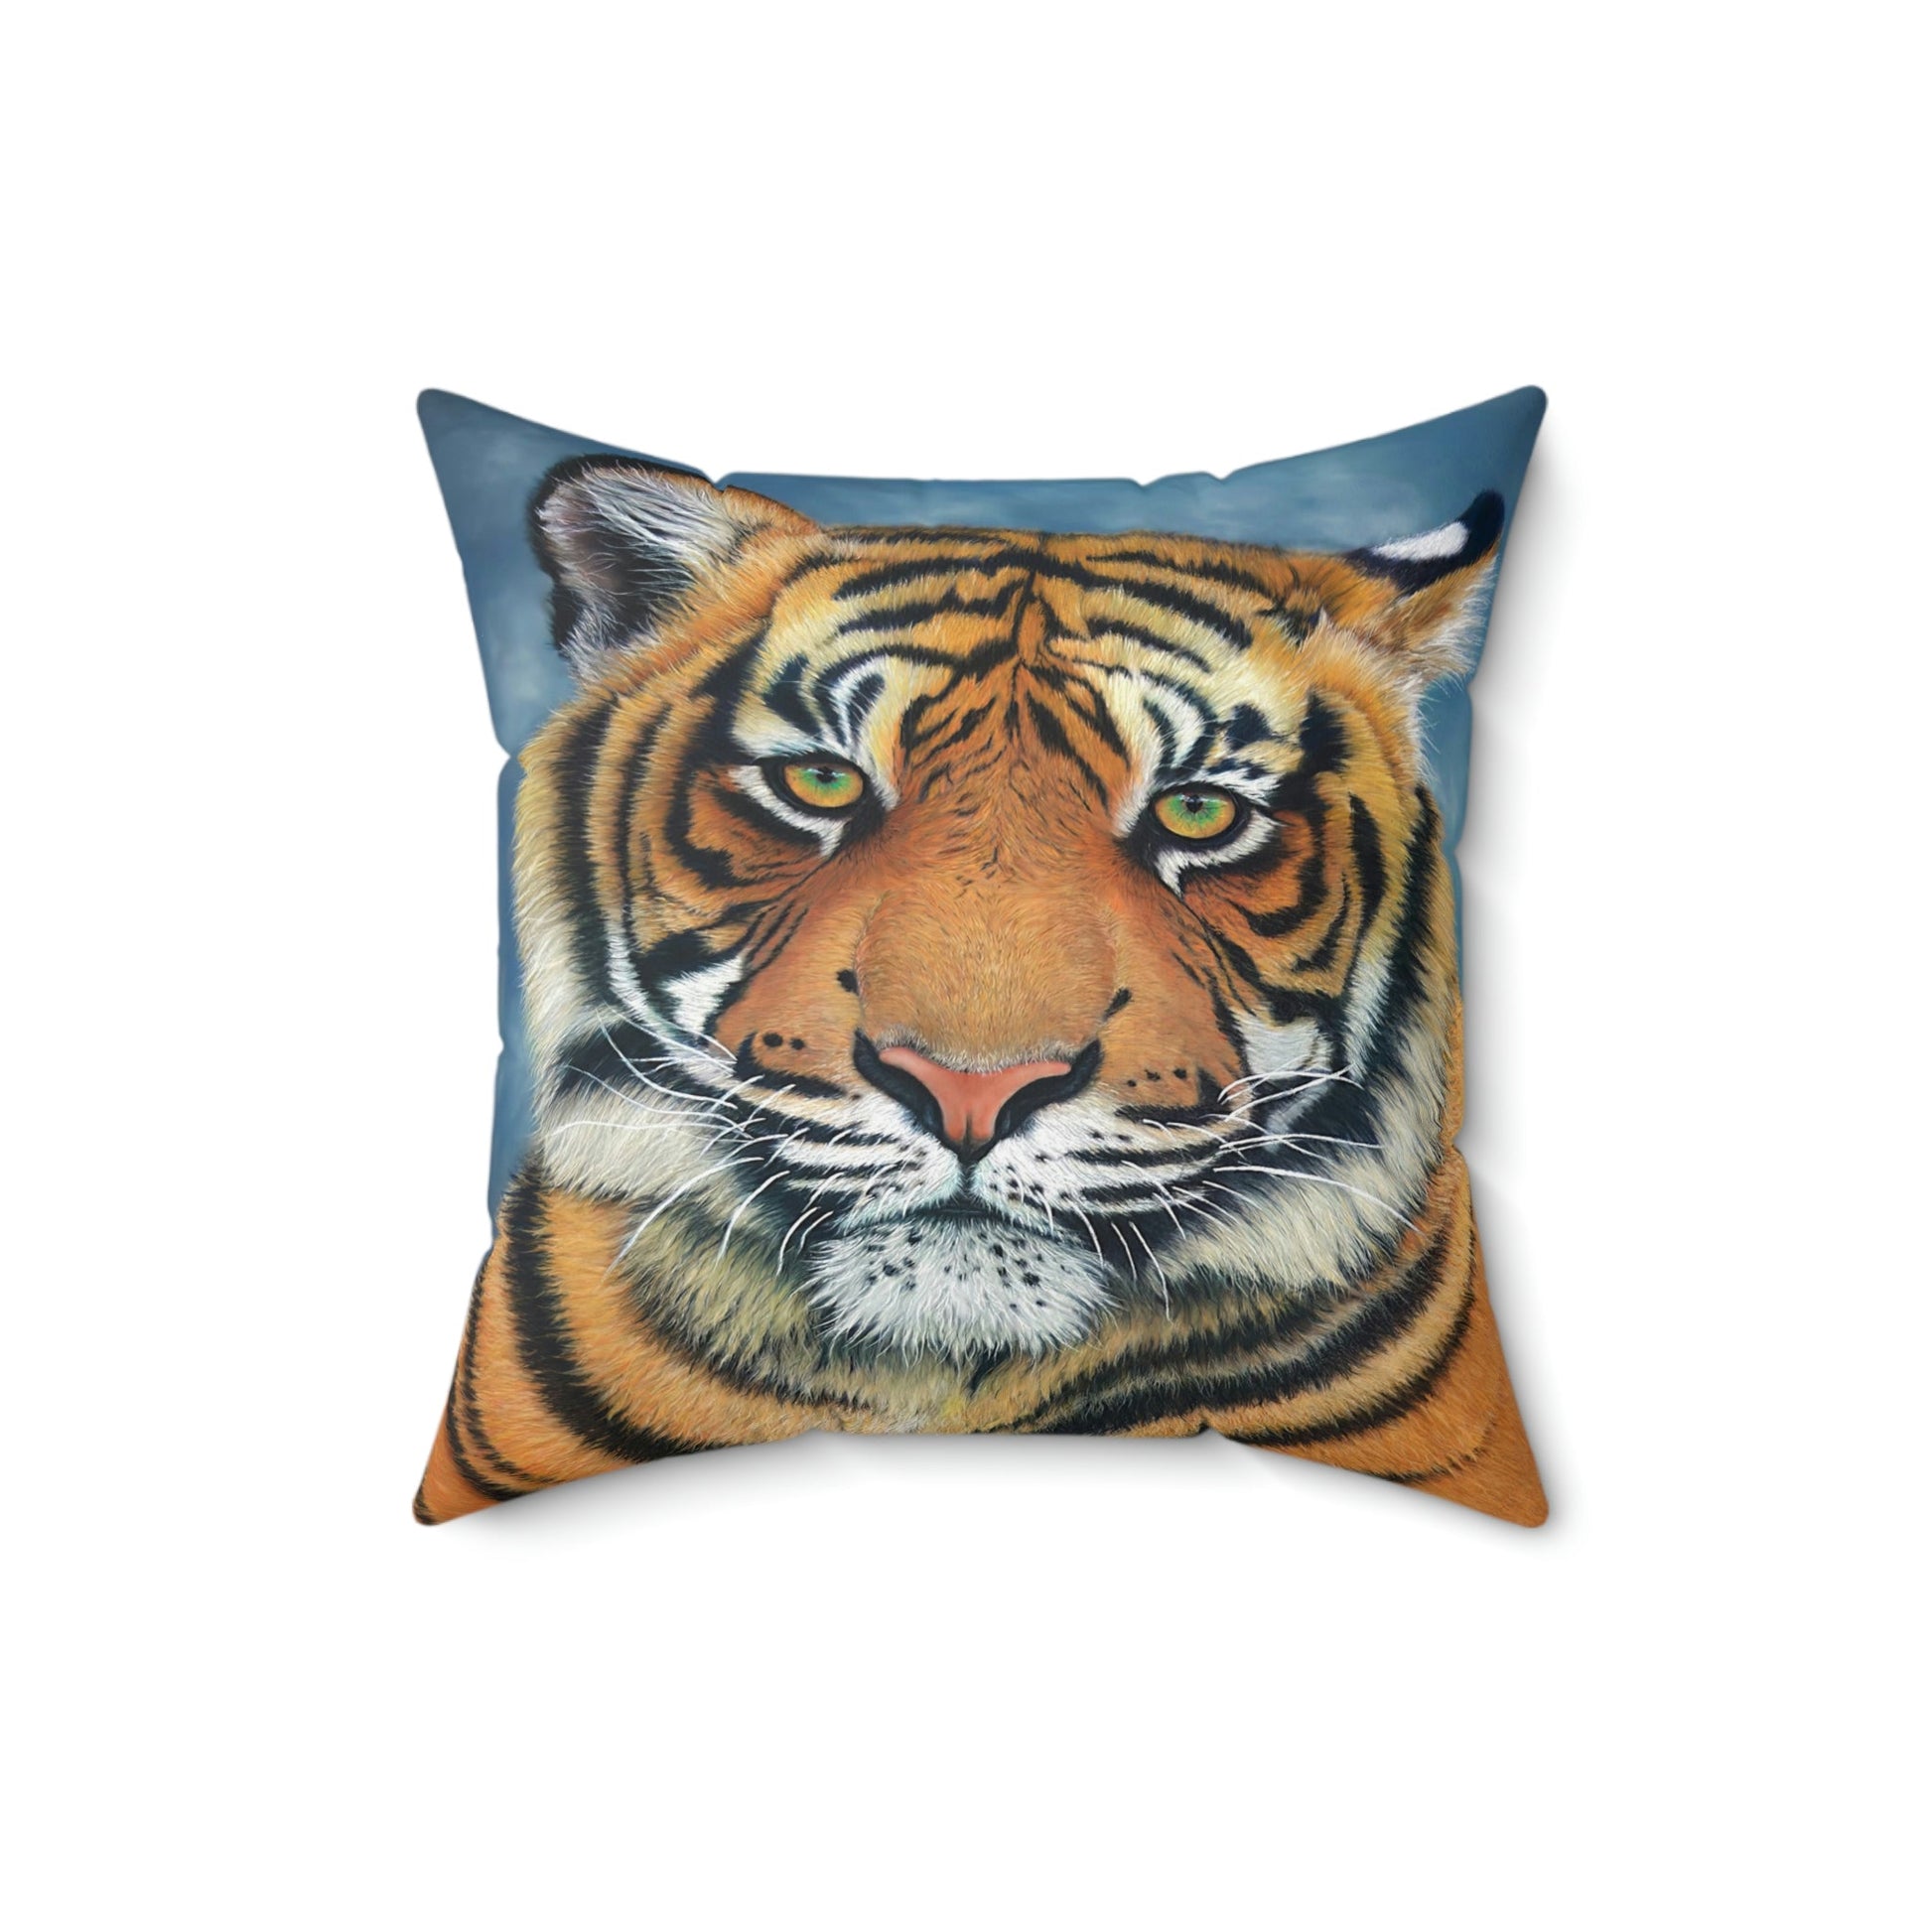 Spun Polyester Throw Pillow - "TIGER"